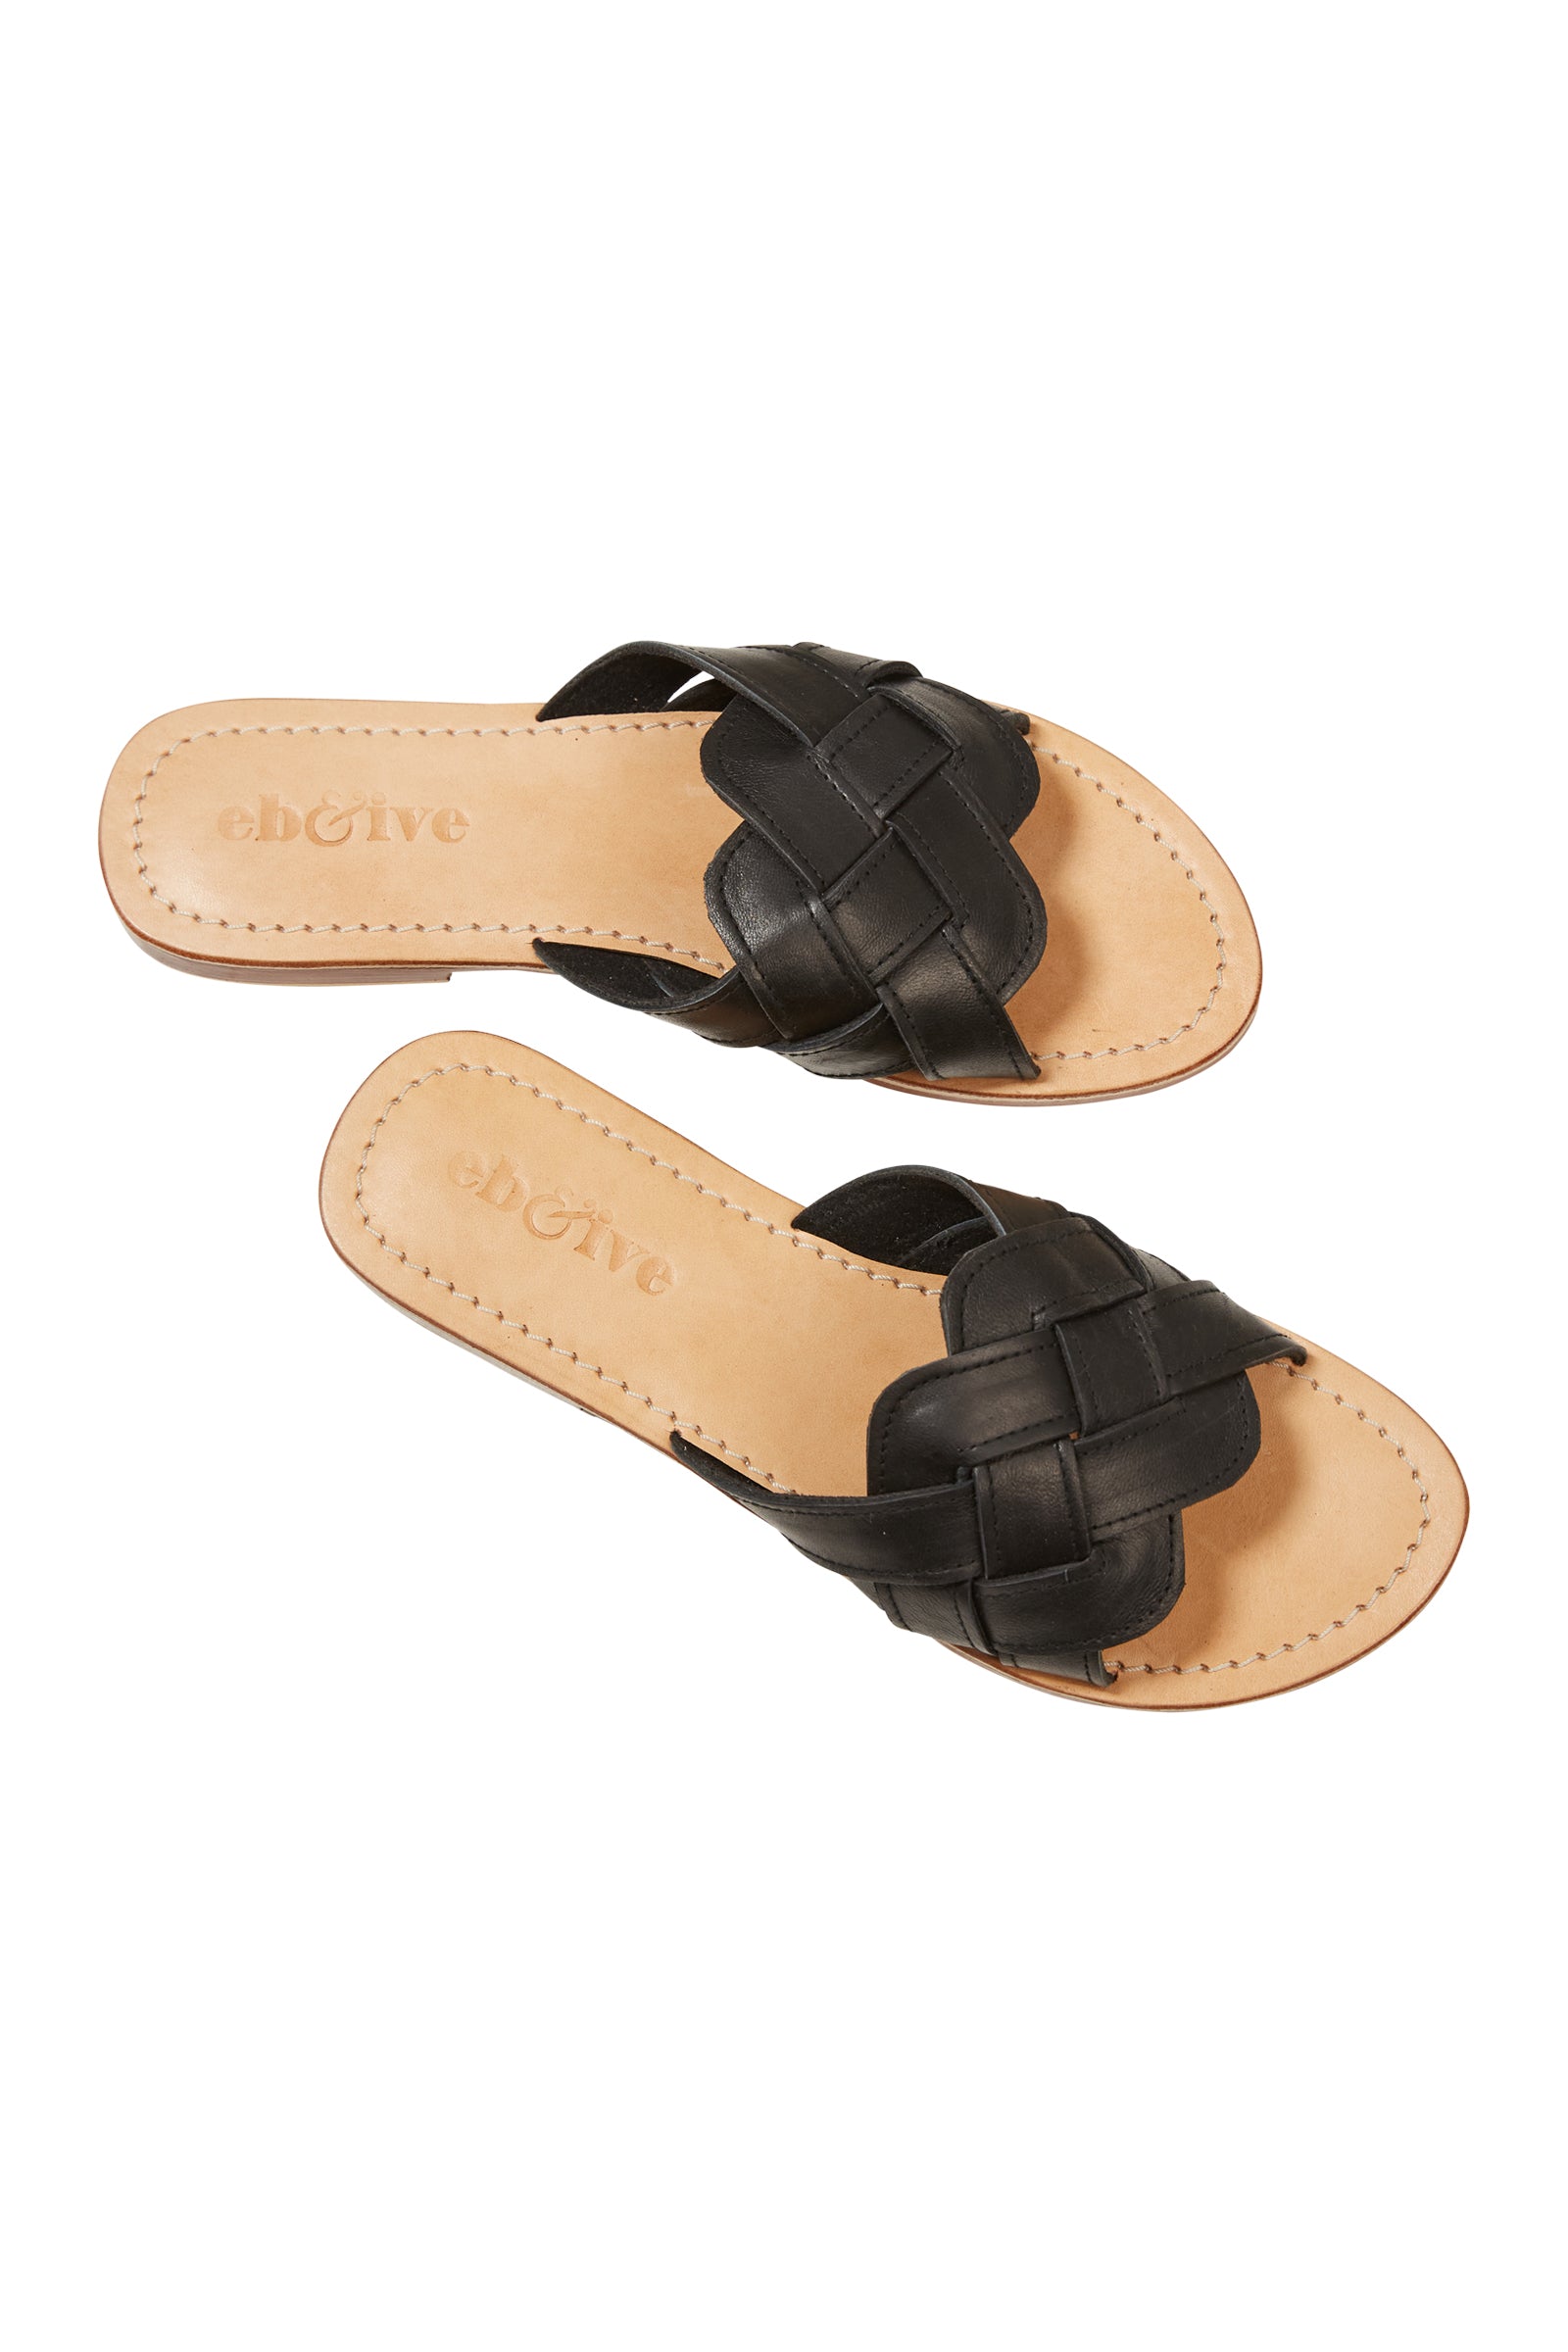 Alma Slide - Black - eb&ive Footwear - Sandals